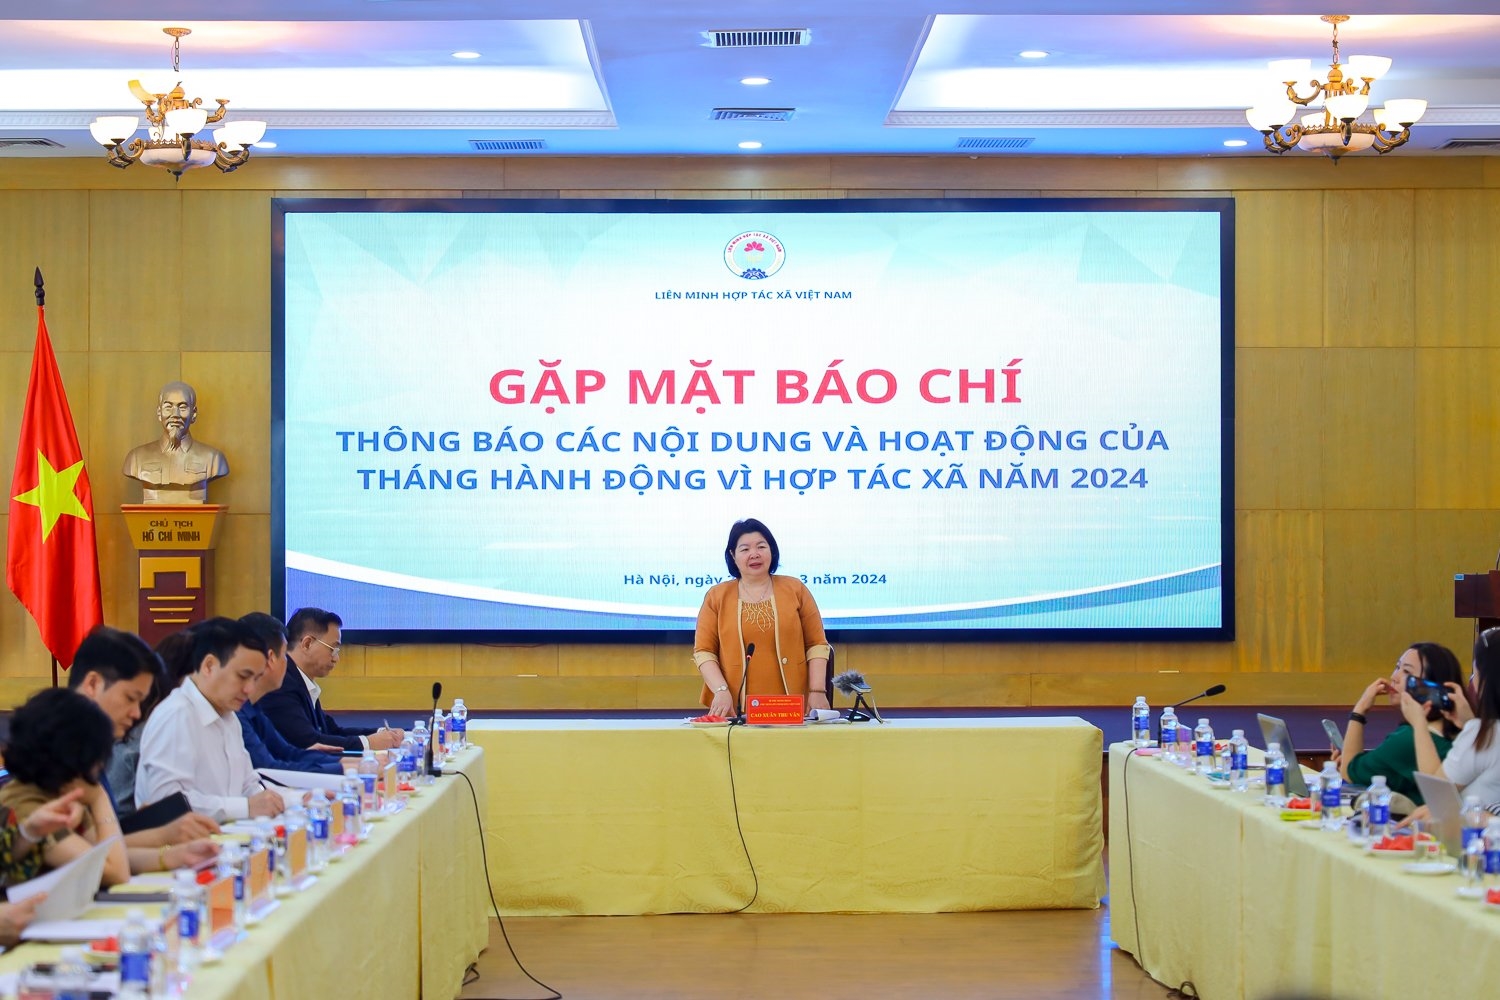 Bà Cao Xuân Thu Vân, Chủ tịch Liên minh HTX Việt Nam phát biểu tại buổi họp